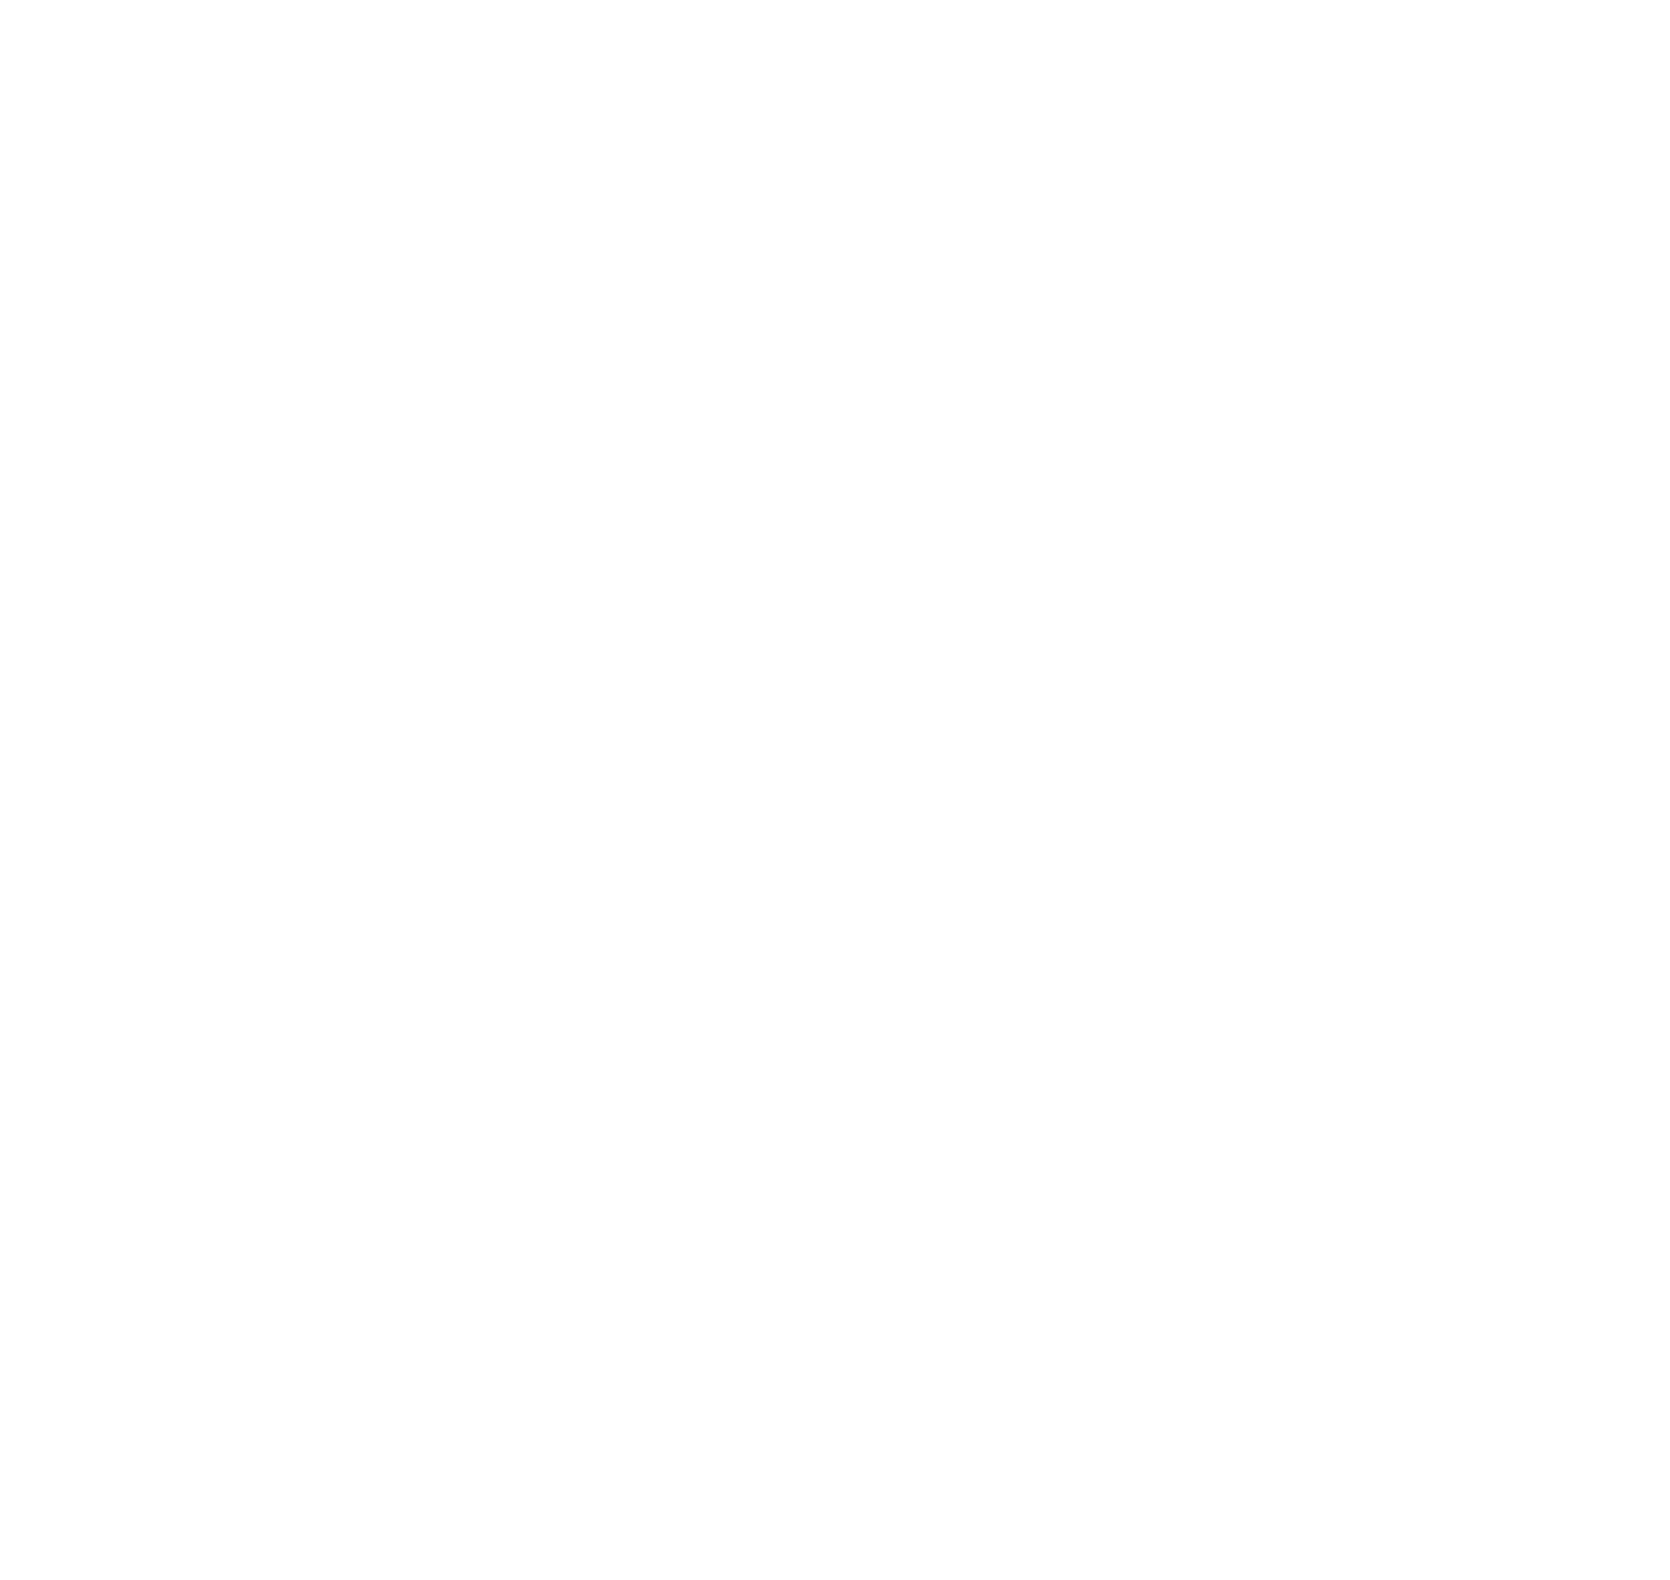 Herzlich willkommen auf der Homepage des Lions Club Meschede!